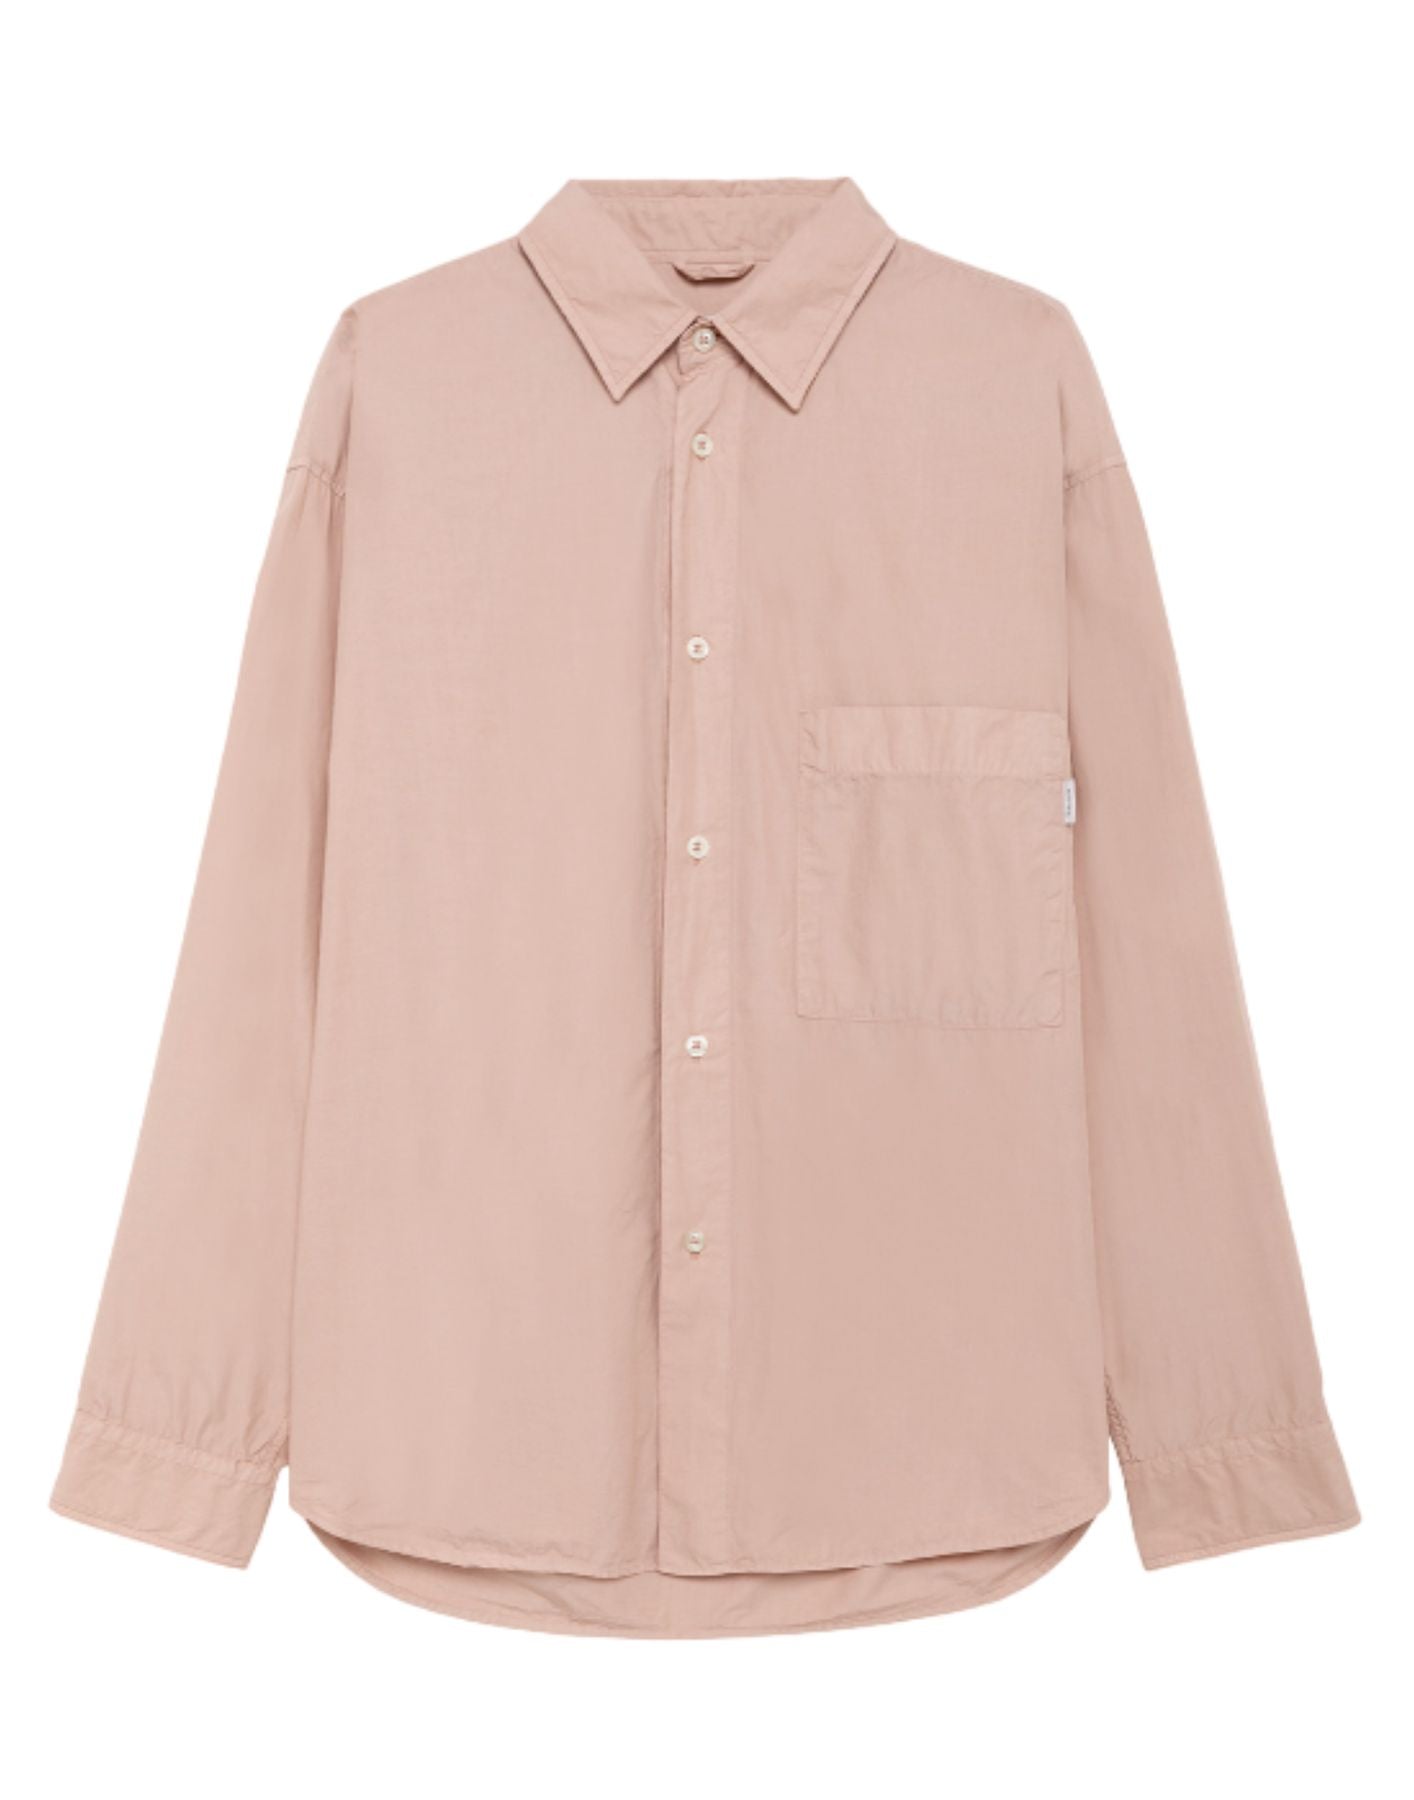 Camiseta hombre amu108p4290569 rosa gris Amish